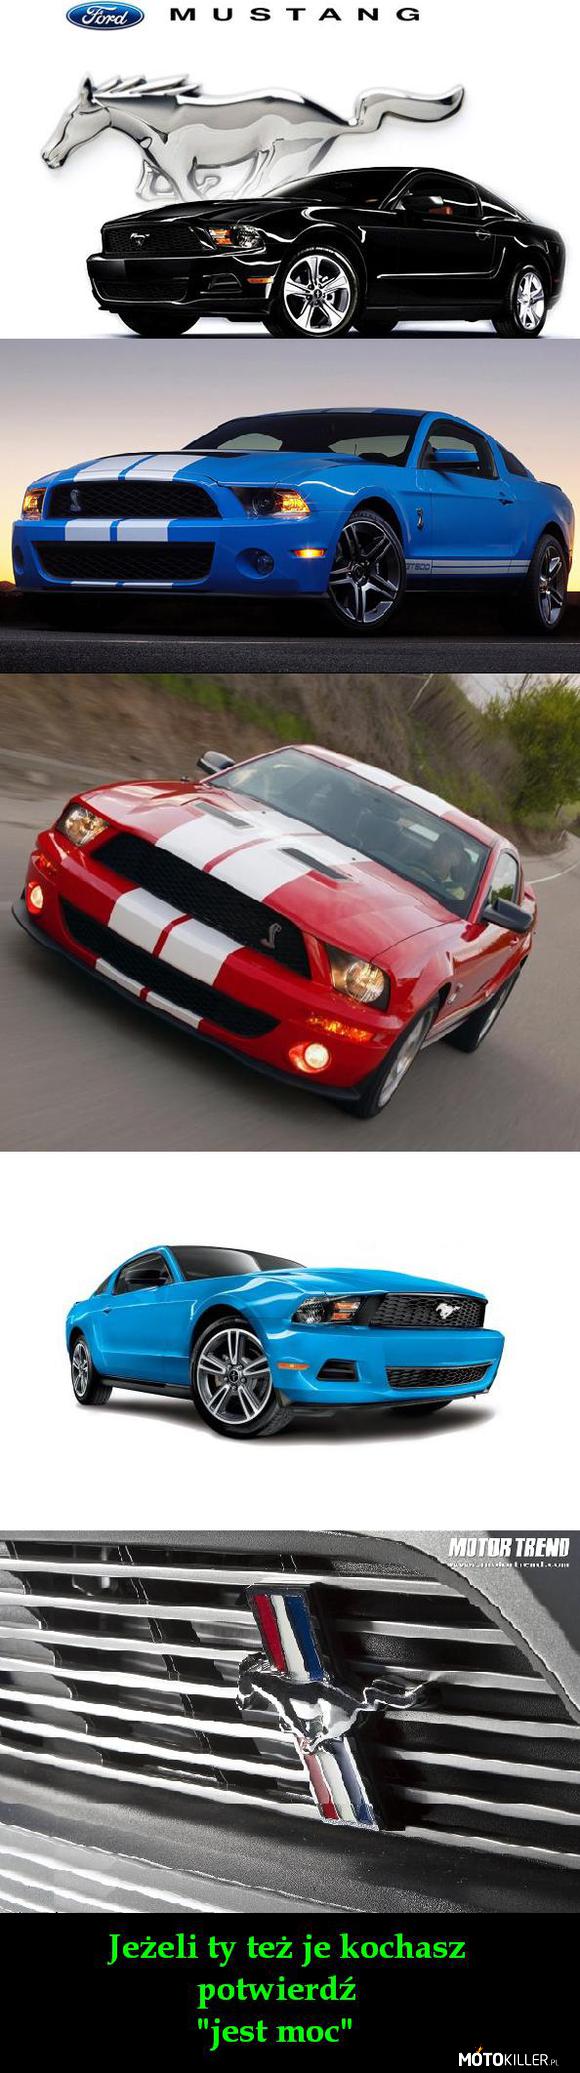 Kocham To – Na zdjęciach są:
- Ford Mustang V
- Ford Mustang Shelby GT500
&quot;Ford Mustang&quot; jest produkowany od 1964 roku 